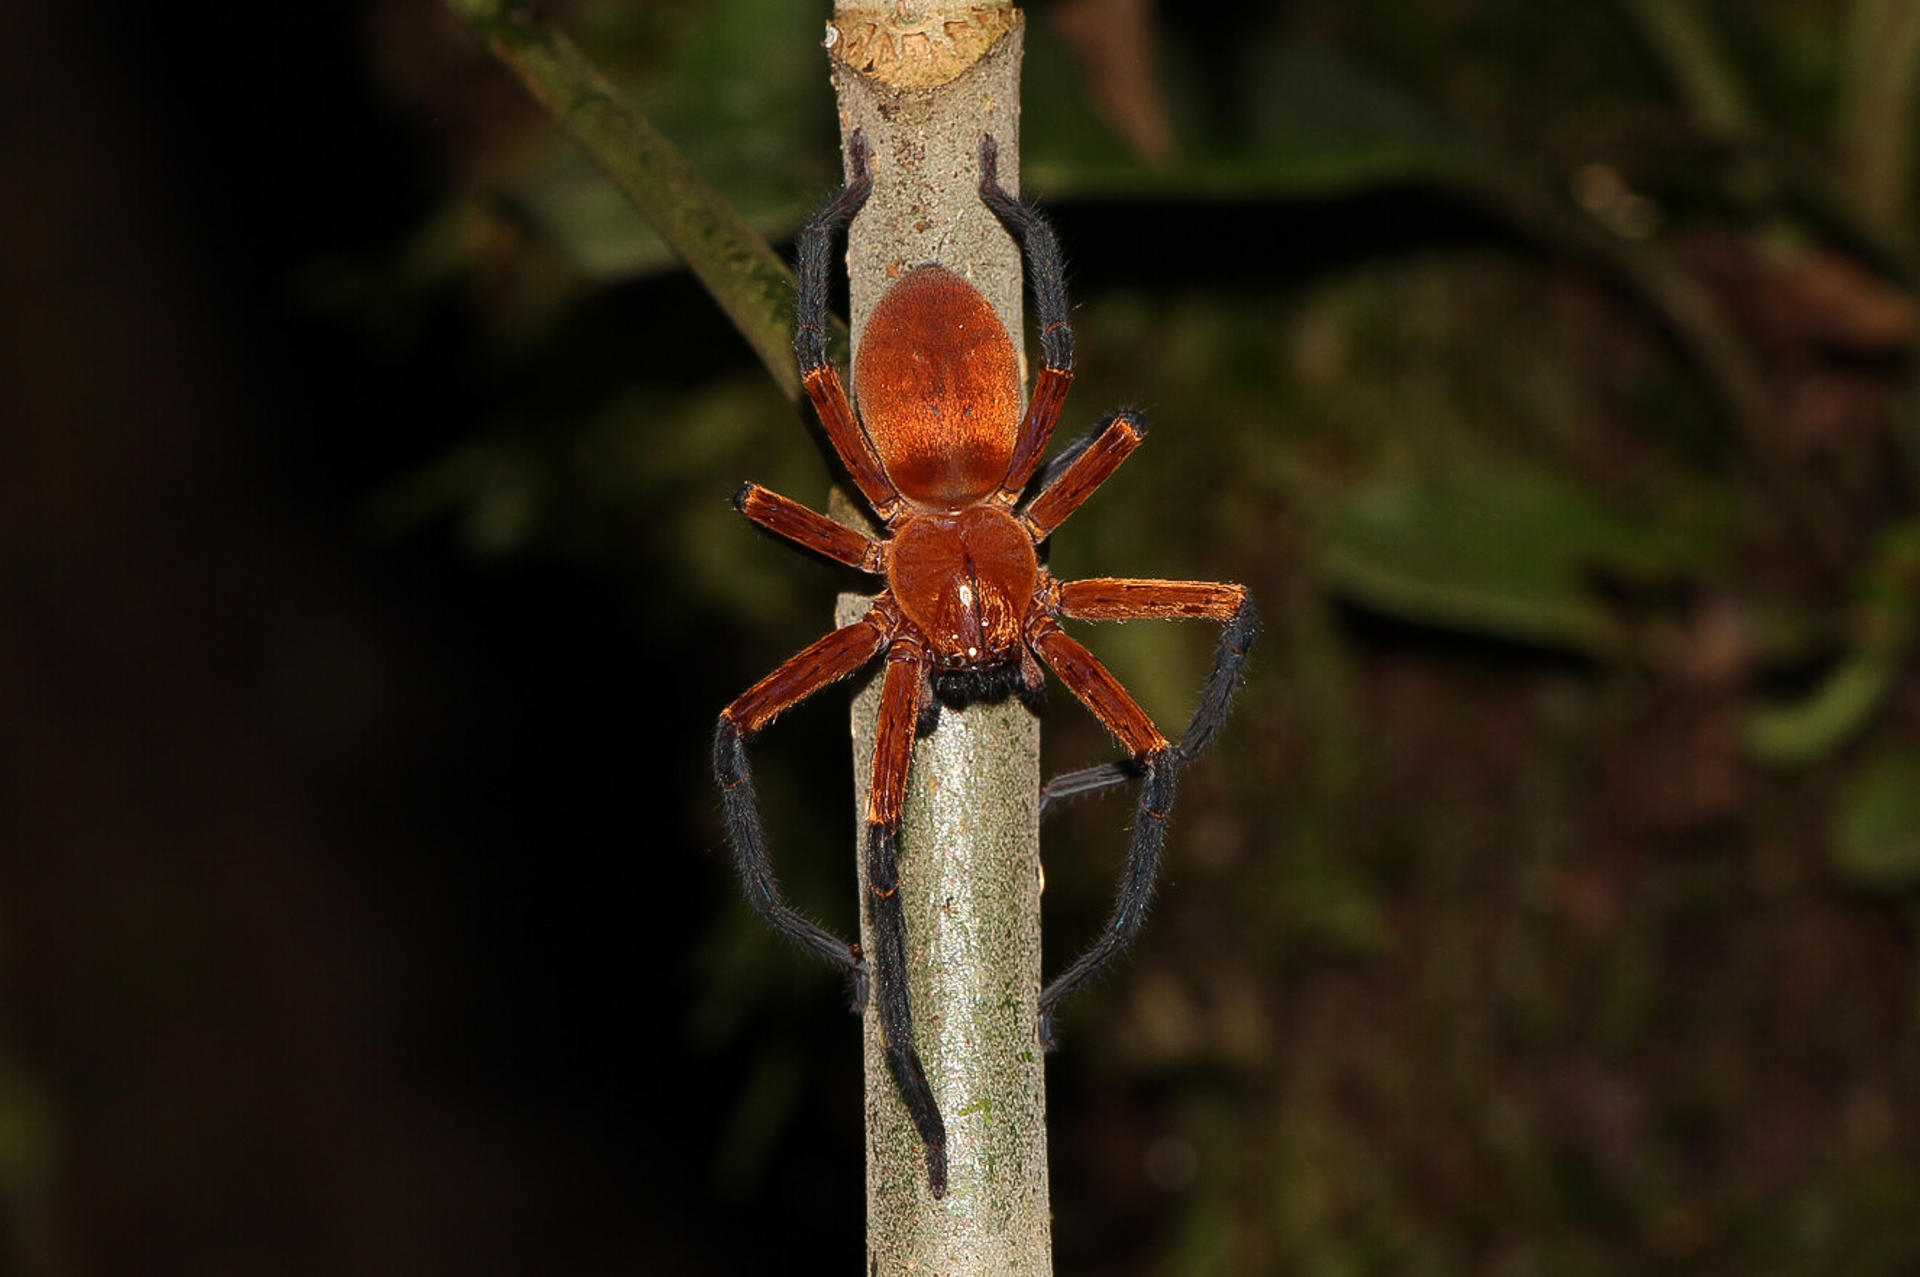 Fotografía cedida hoy por Pedro Peñaherrera que muestra a la araña cangrejo gigante, recién descubierta en el Parque Nacional Yasuní (Ecuador). EFE/Pedro Peñaherrera